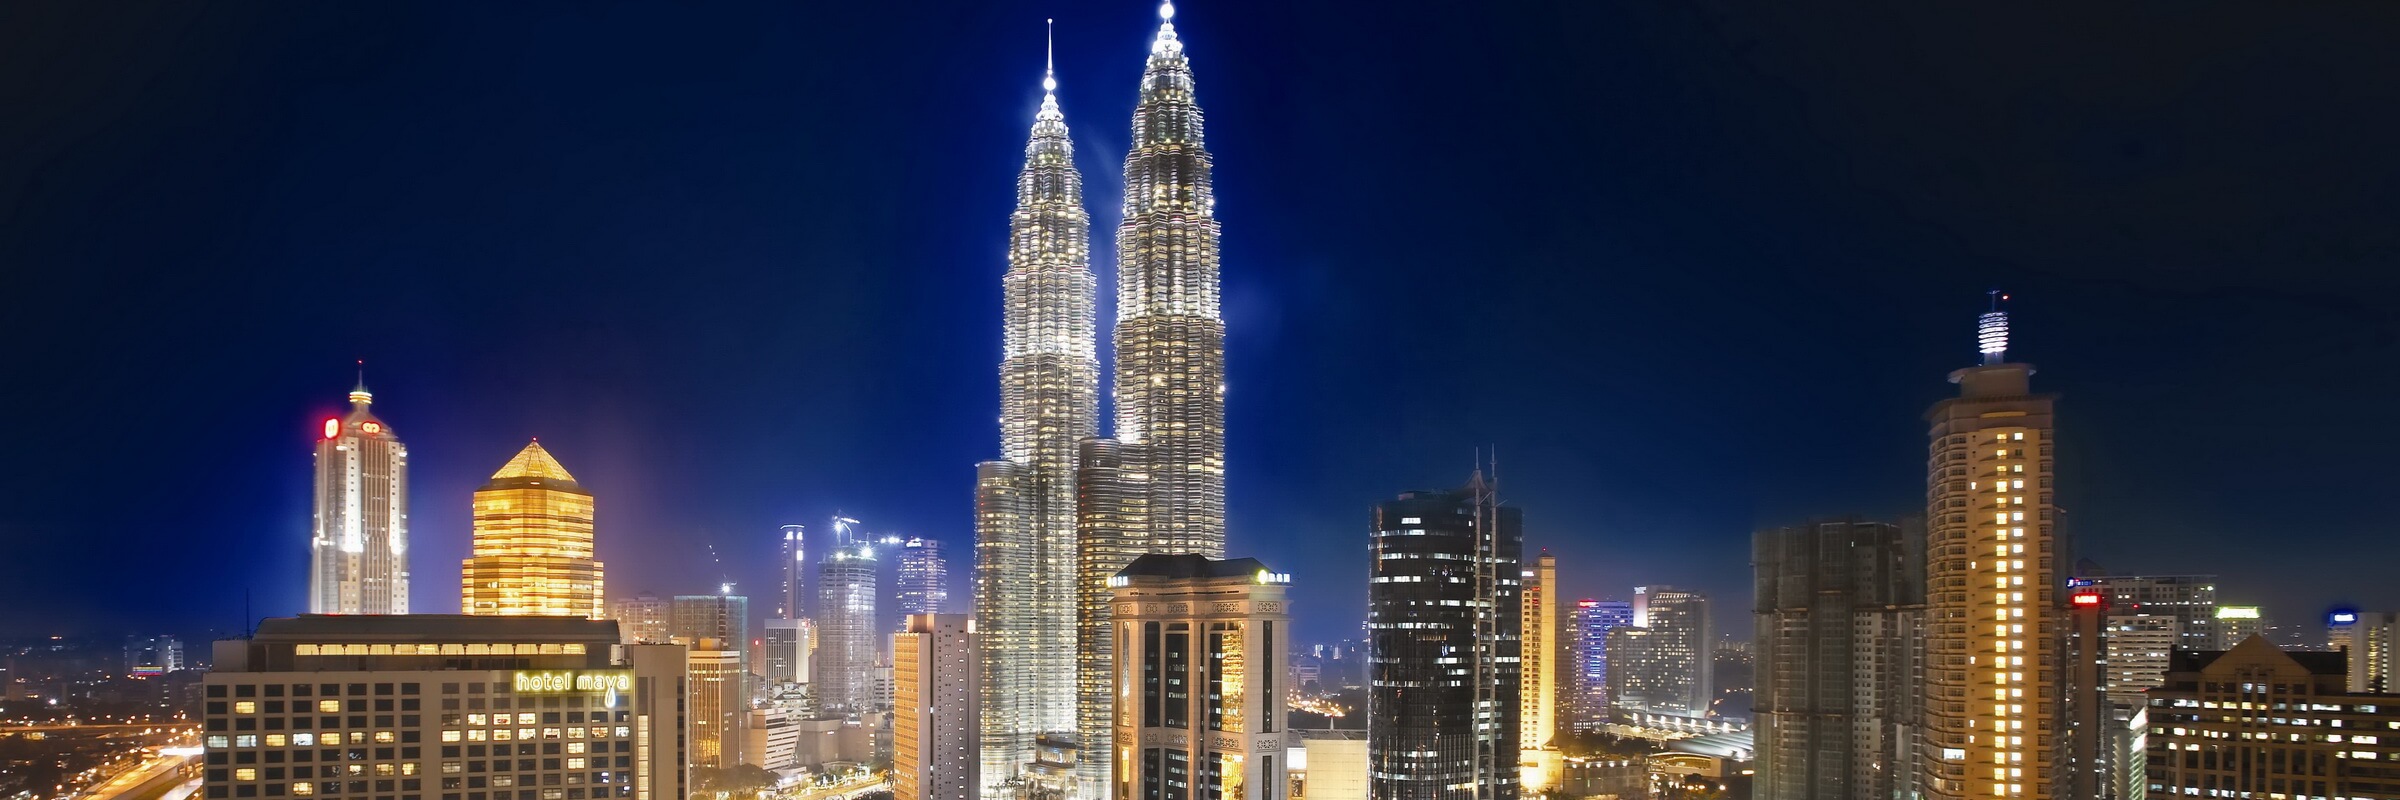 Kuala Lumpurs bei Nacht hell erleuchtete Skyline ist atemberaubender Anblick, der zu den Höhepunkten einer Malaysia-Rundreise zählt.